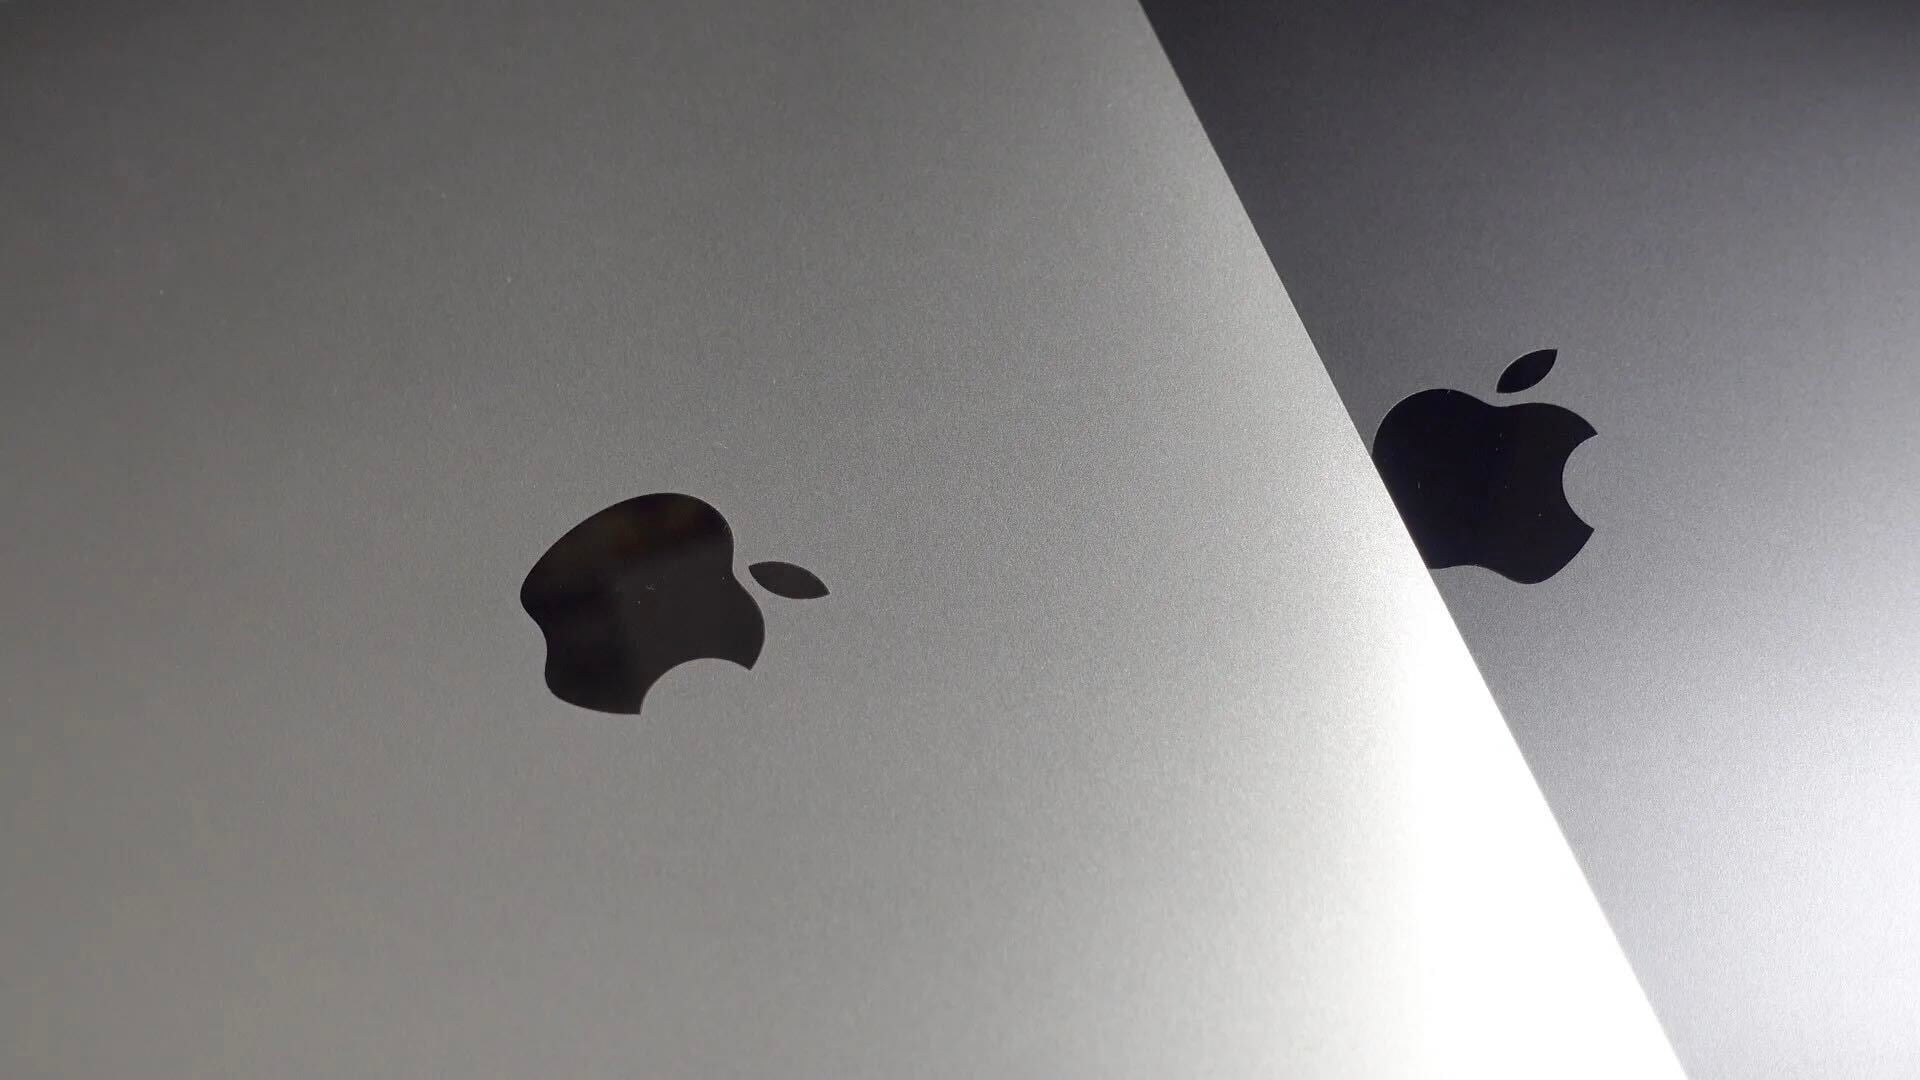 Apple faces antitrust worries